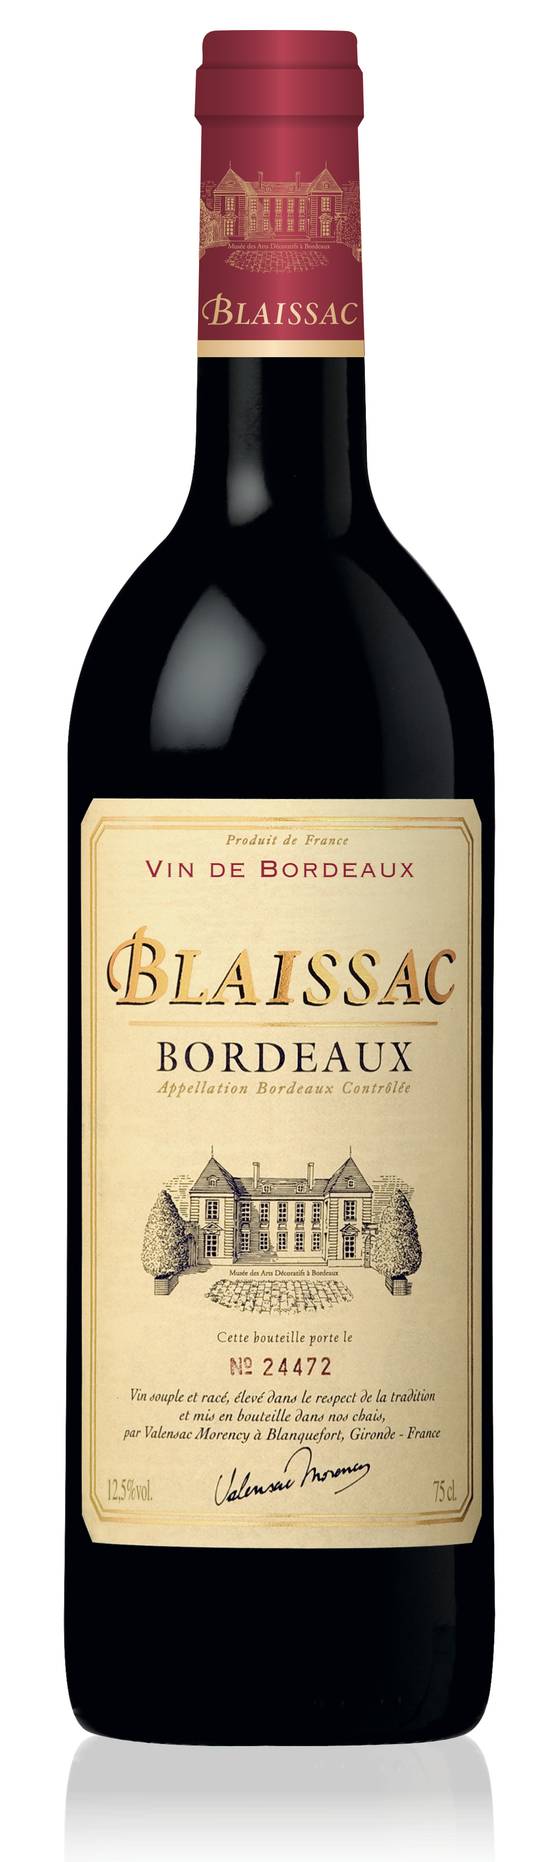 Blaissac - Vin rouge Bordeaux (750 ml)